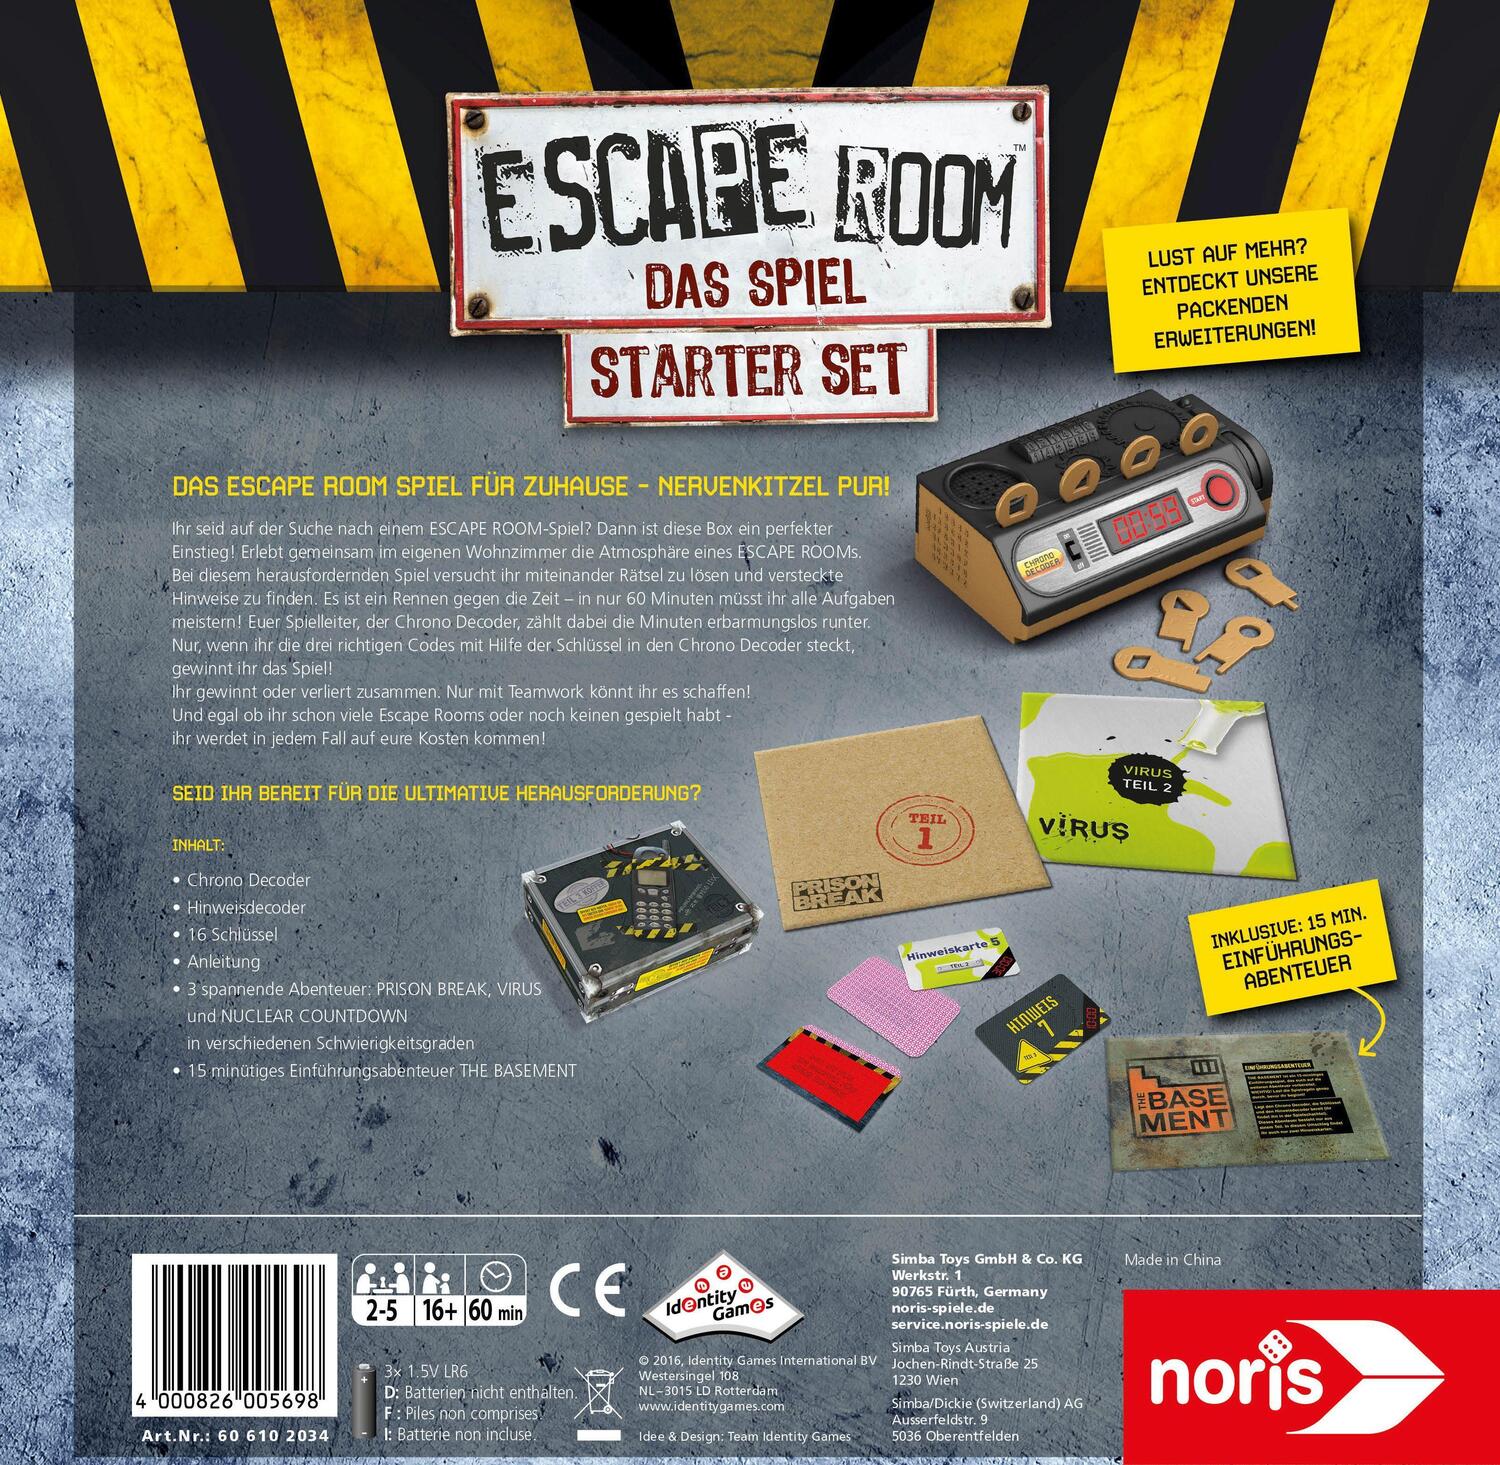 Bild: 4000826005698 | Escape Room Das Spiel | Spiel | 606102034 | Deutsch | 2023 | NORIS